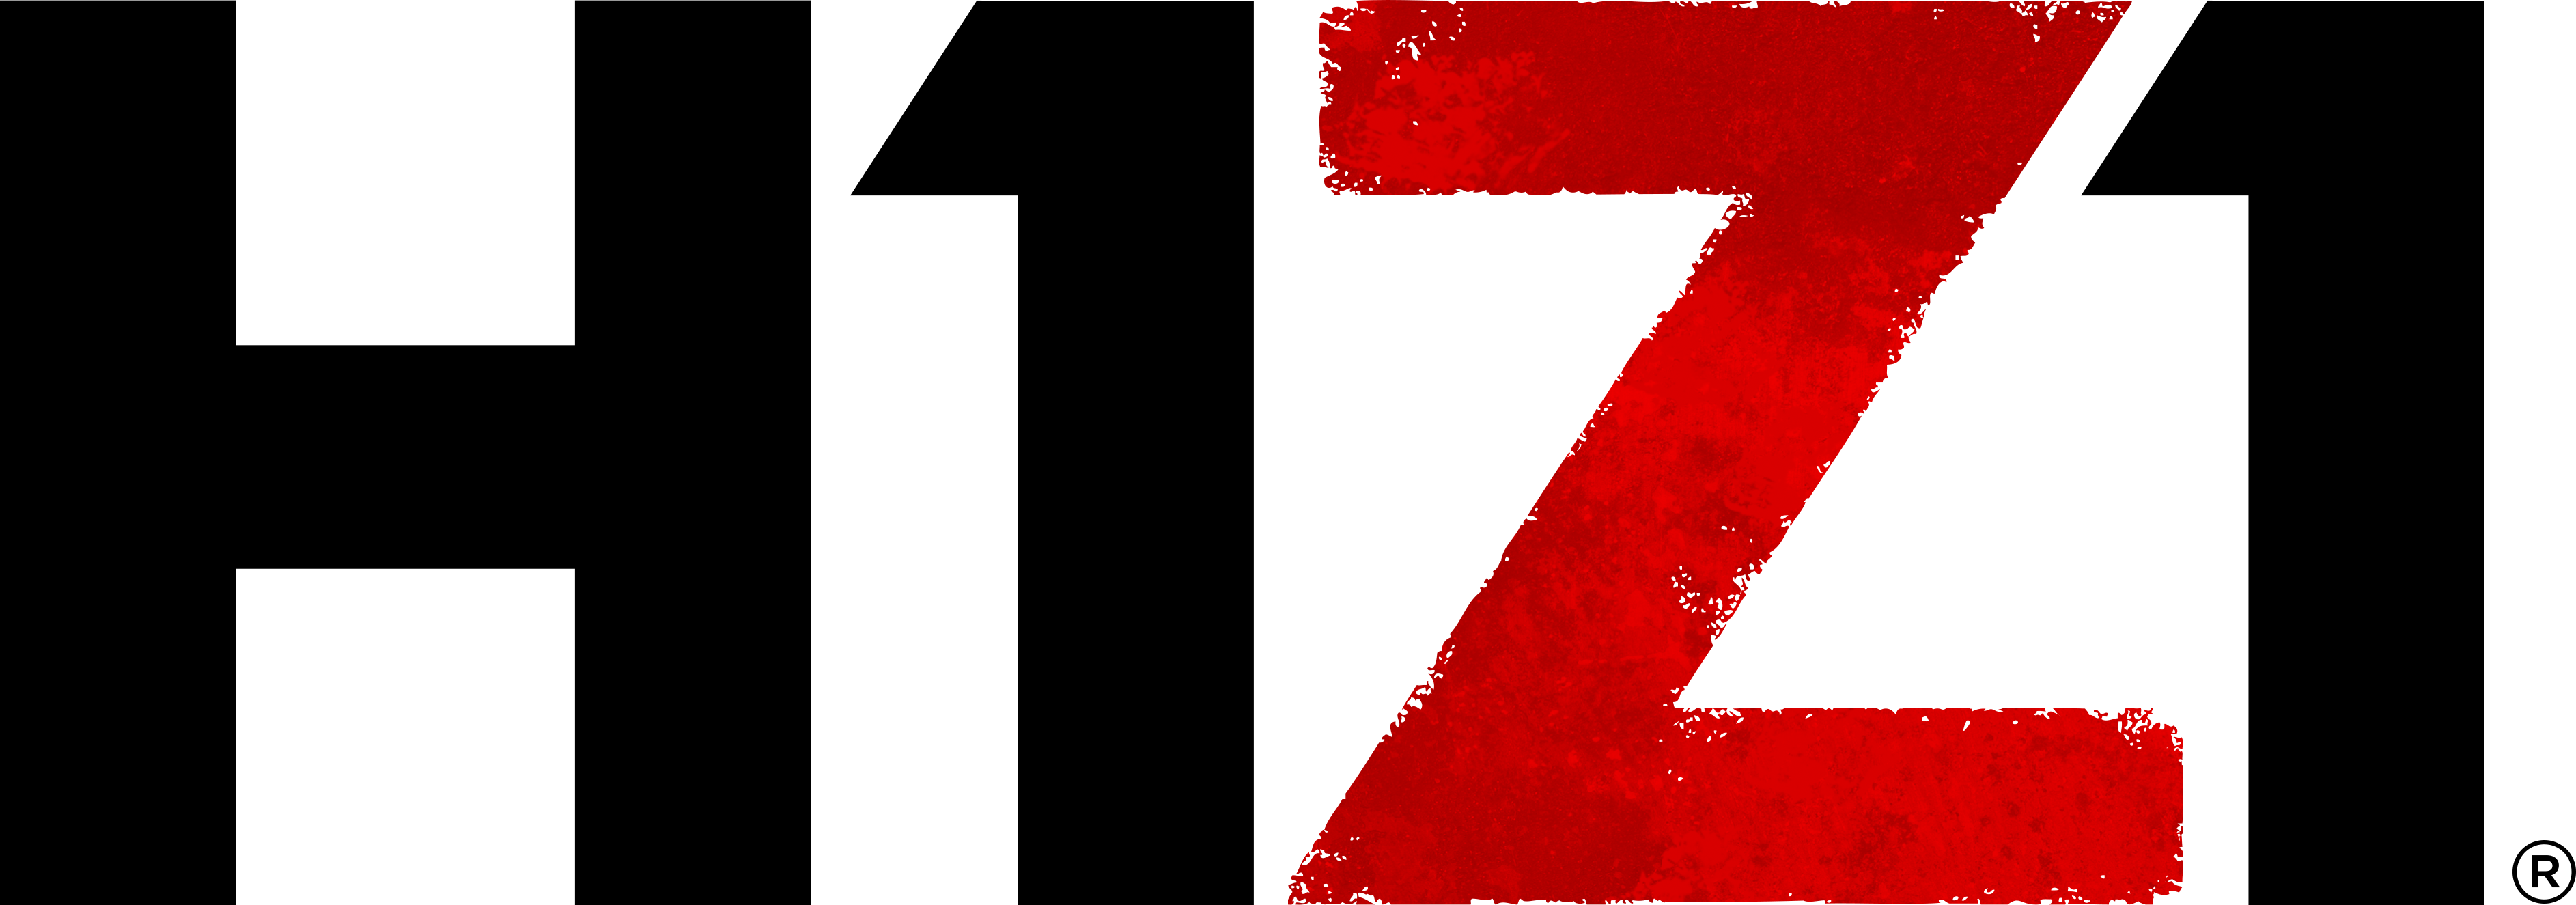 Battle Royale de H1Z1 chega grátis ao PS4 em maio